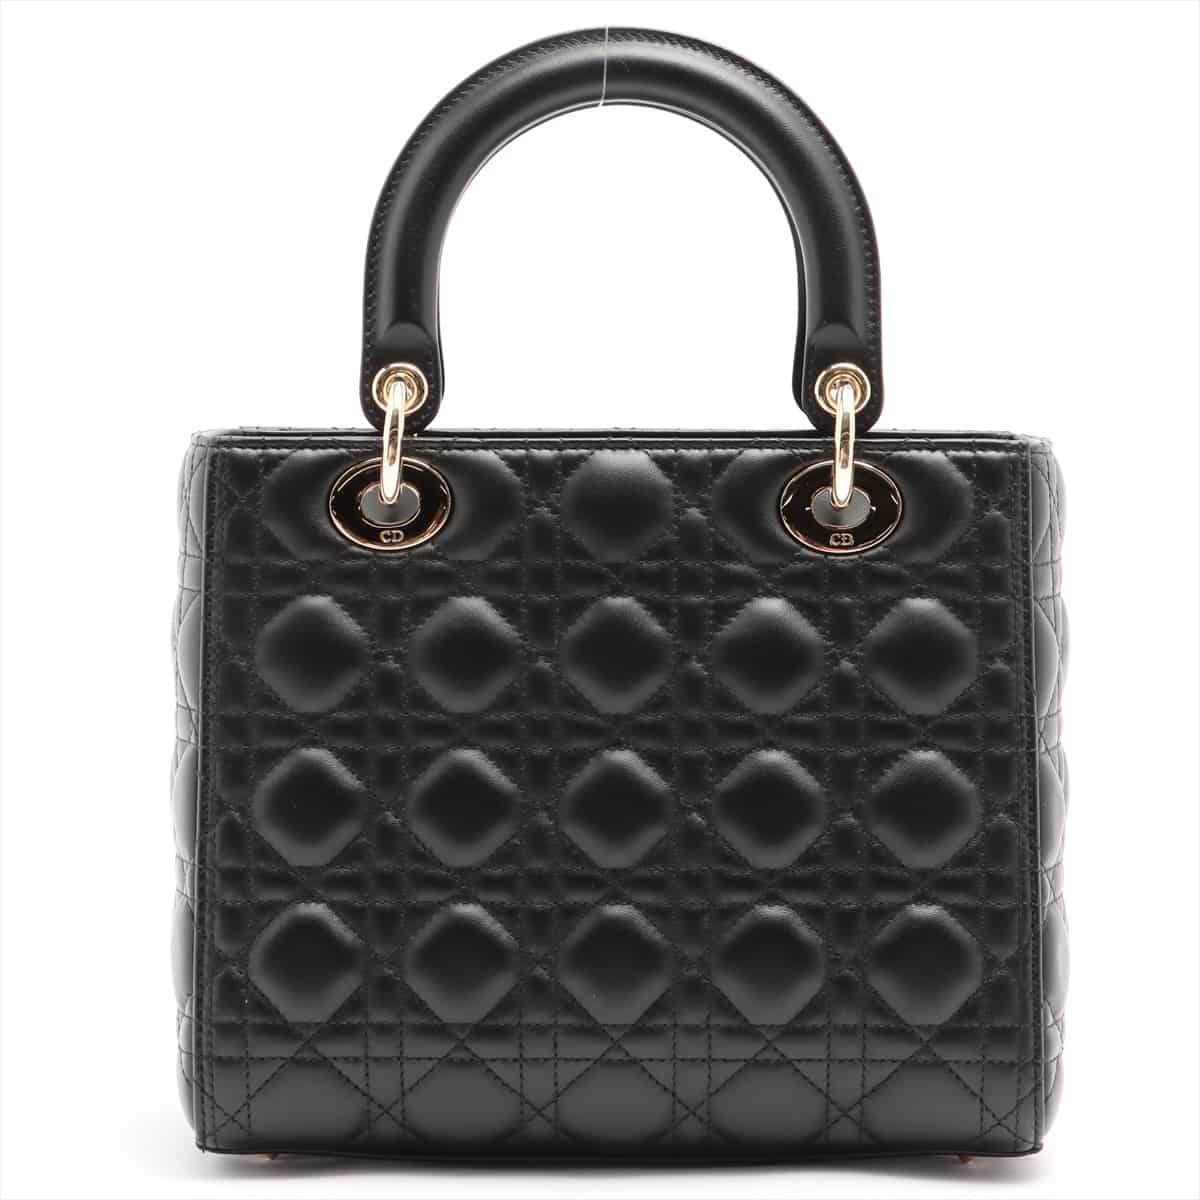 Christian Dior Lady Dior Cannage Leather 2way handbag Black